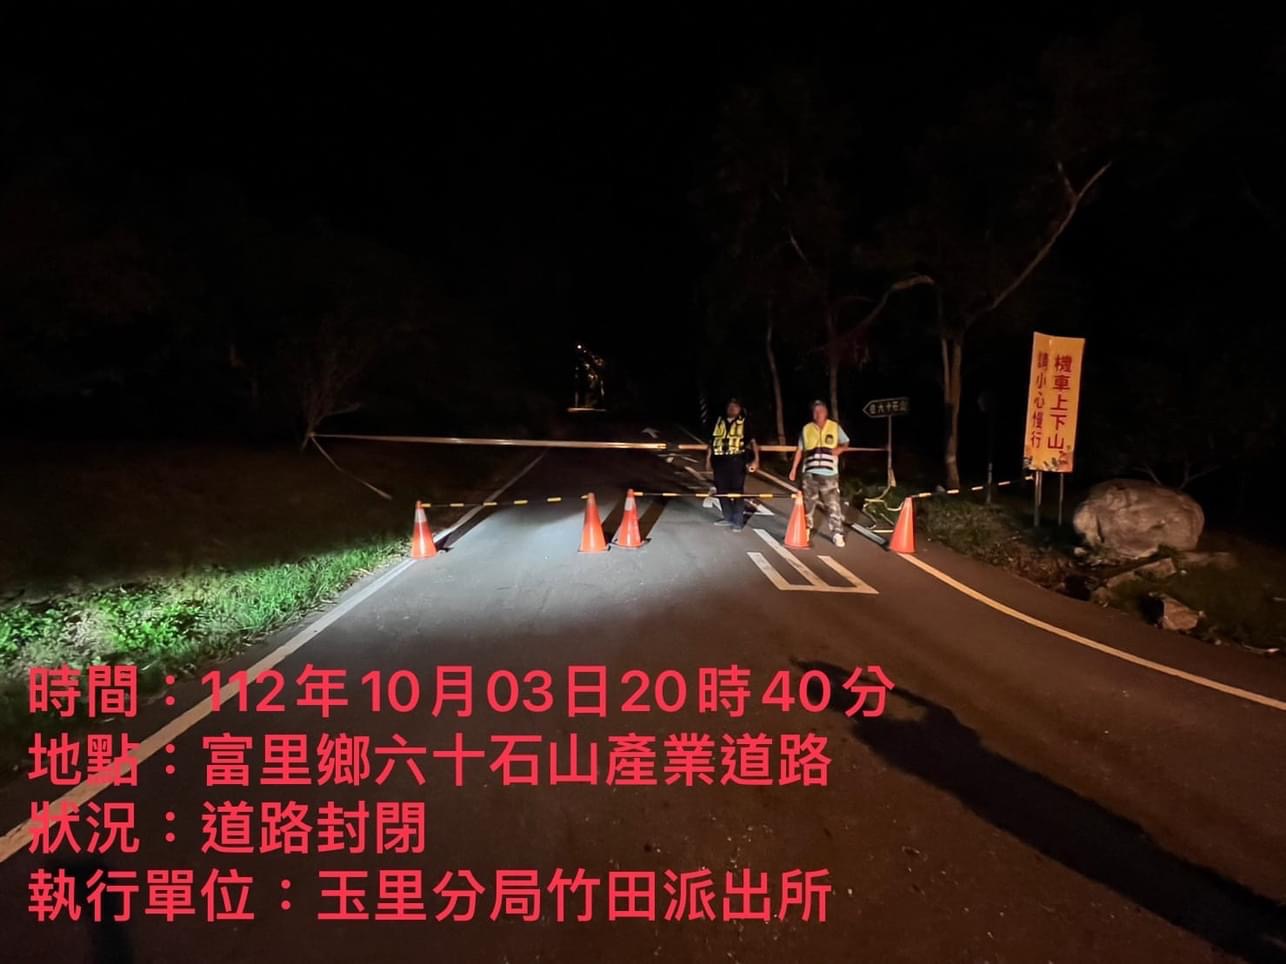 快訊》因應小犬颱風來襲 花蓮縣三處道路進行預防性封閉